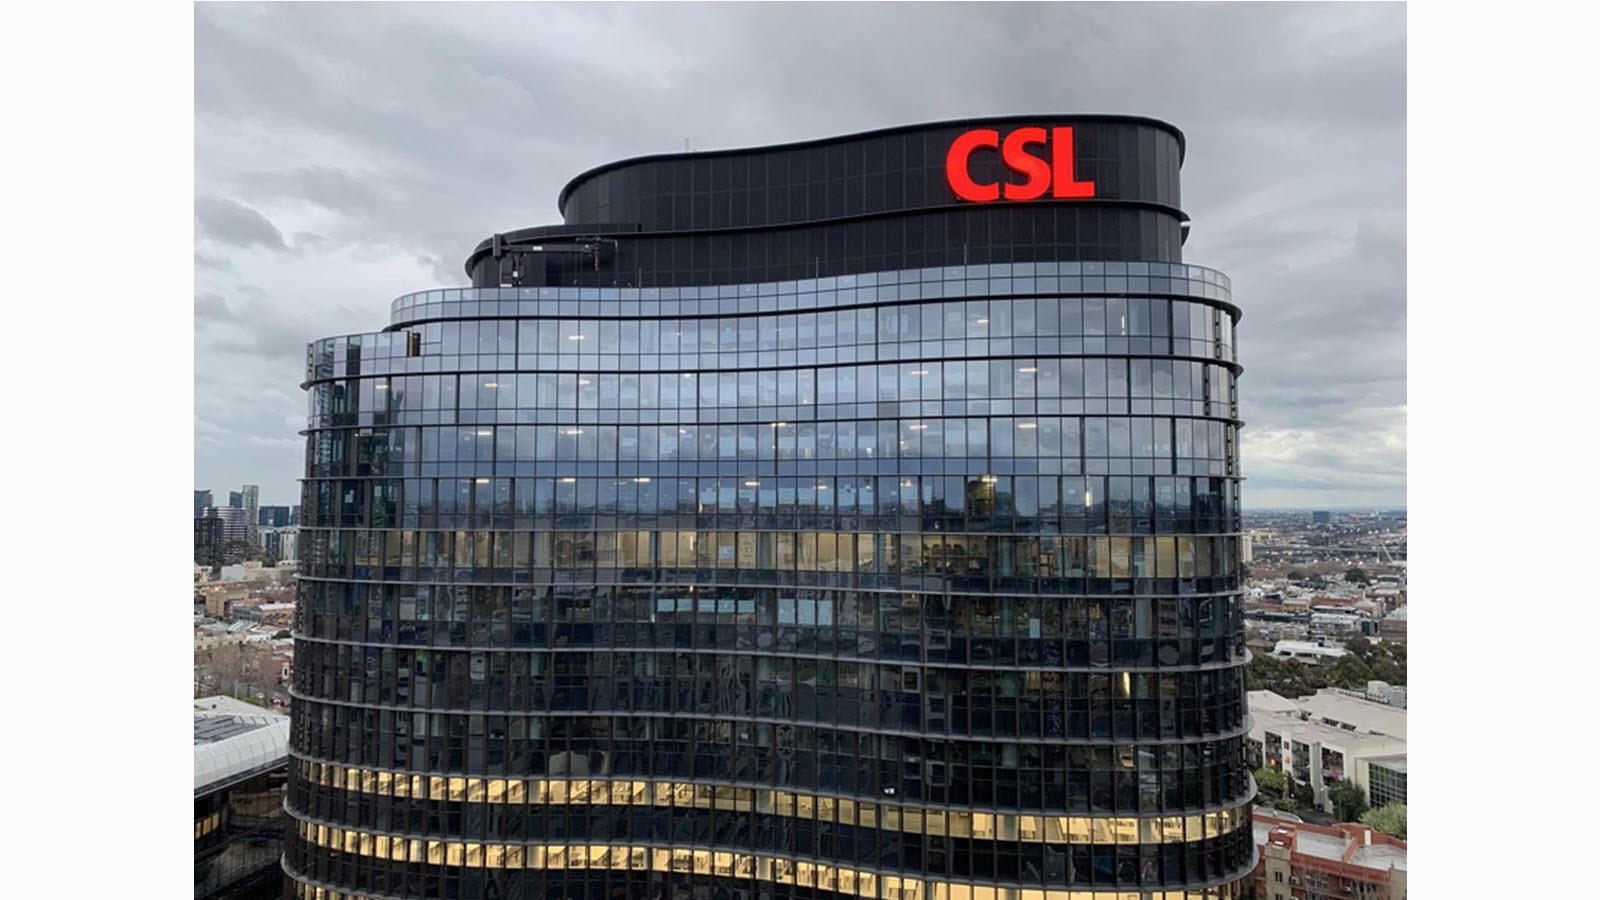 CSL headquarters building in Melbourne, Australia